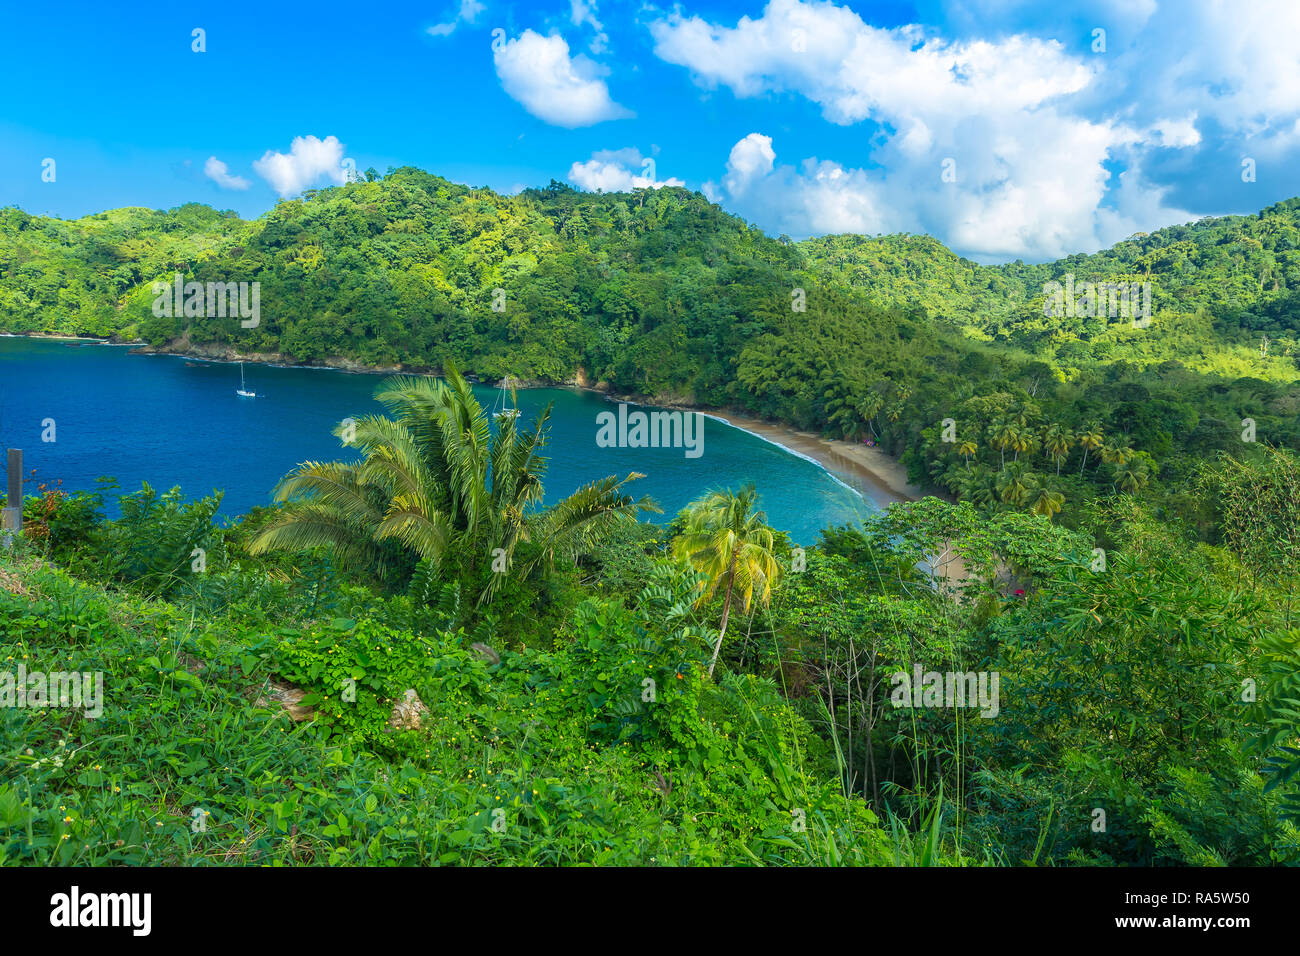 Englishman's Bay sur l'île tropicale de Tobago dans les Caraïbes, Antilles. Ciel bleu profond et l'océan dans cette baie isolée, Paysage Banque D'Images